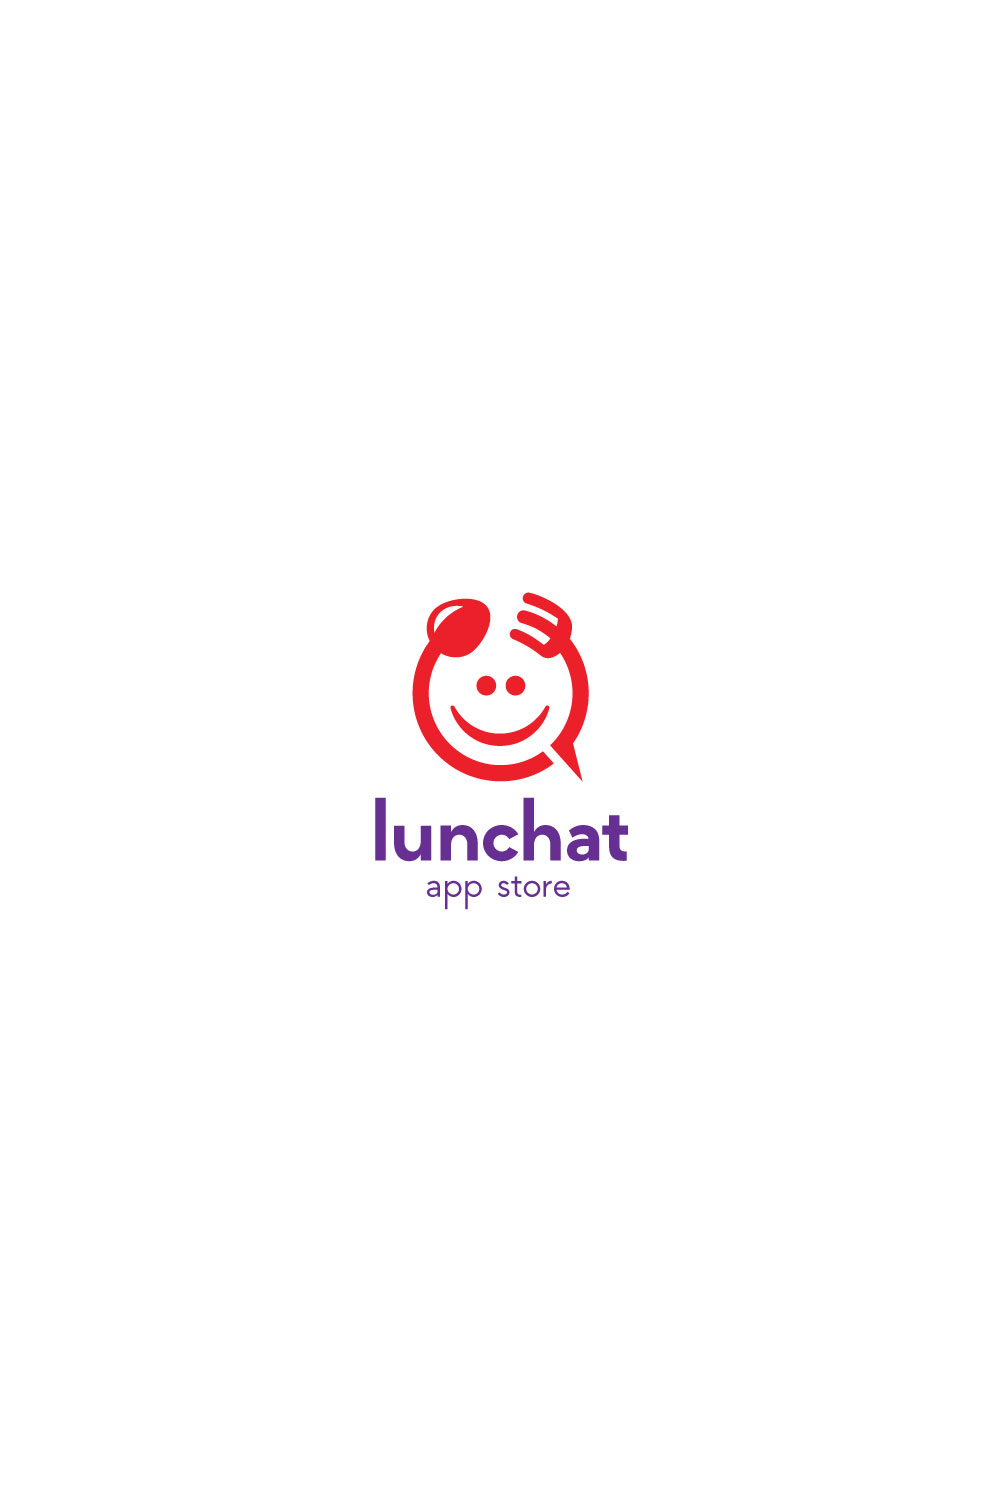 chat logo pint 222 1